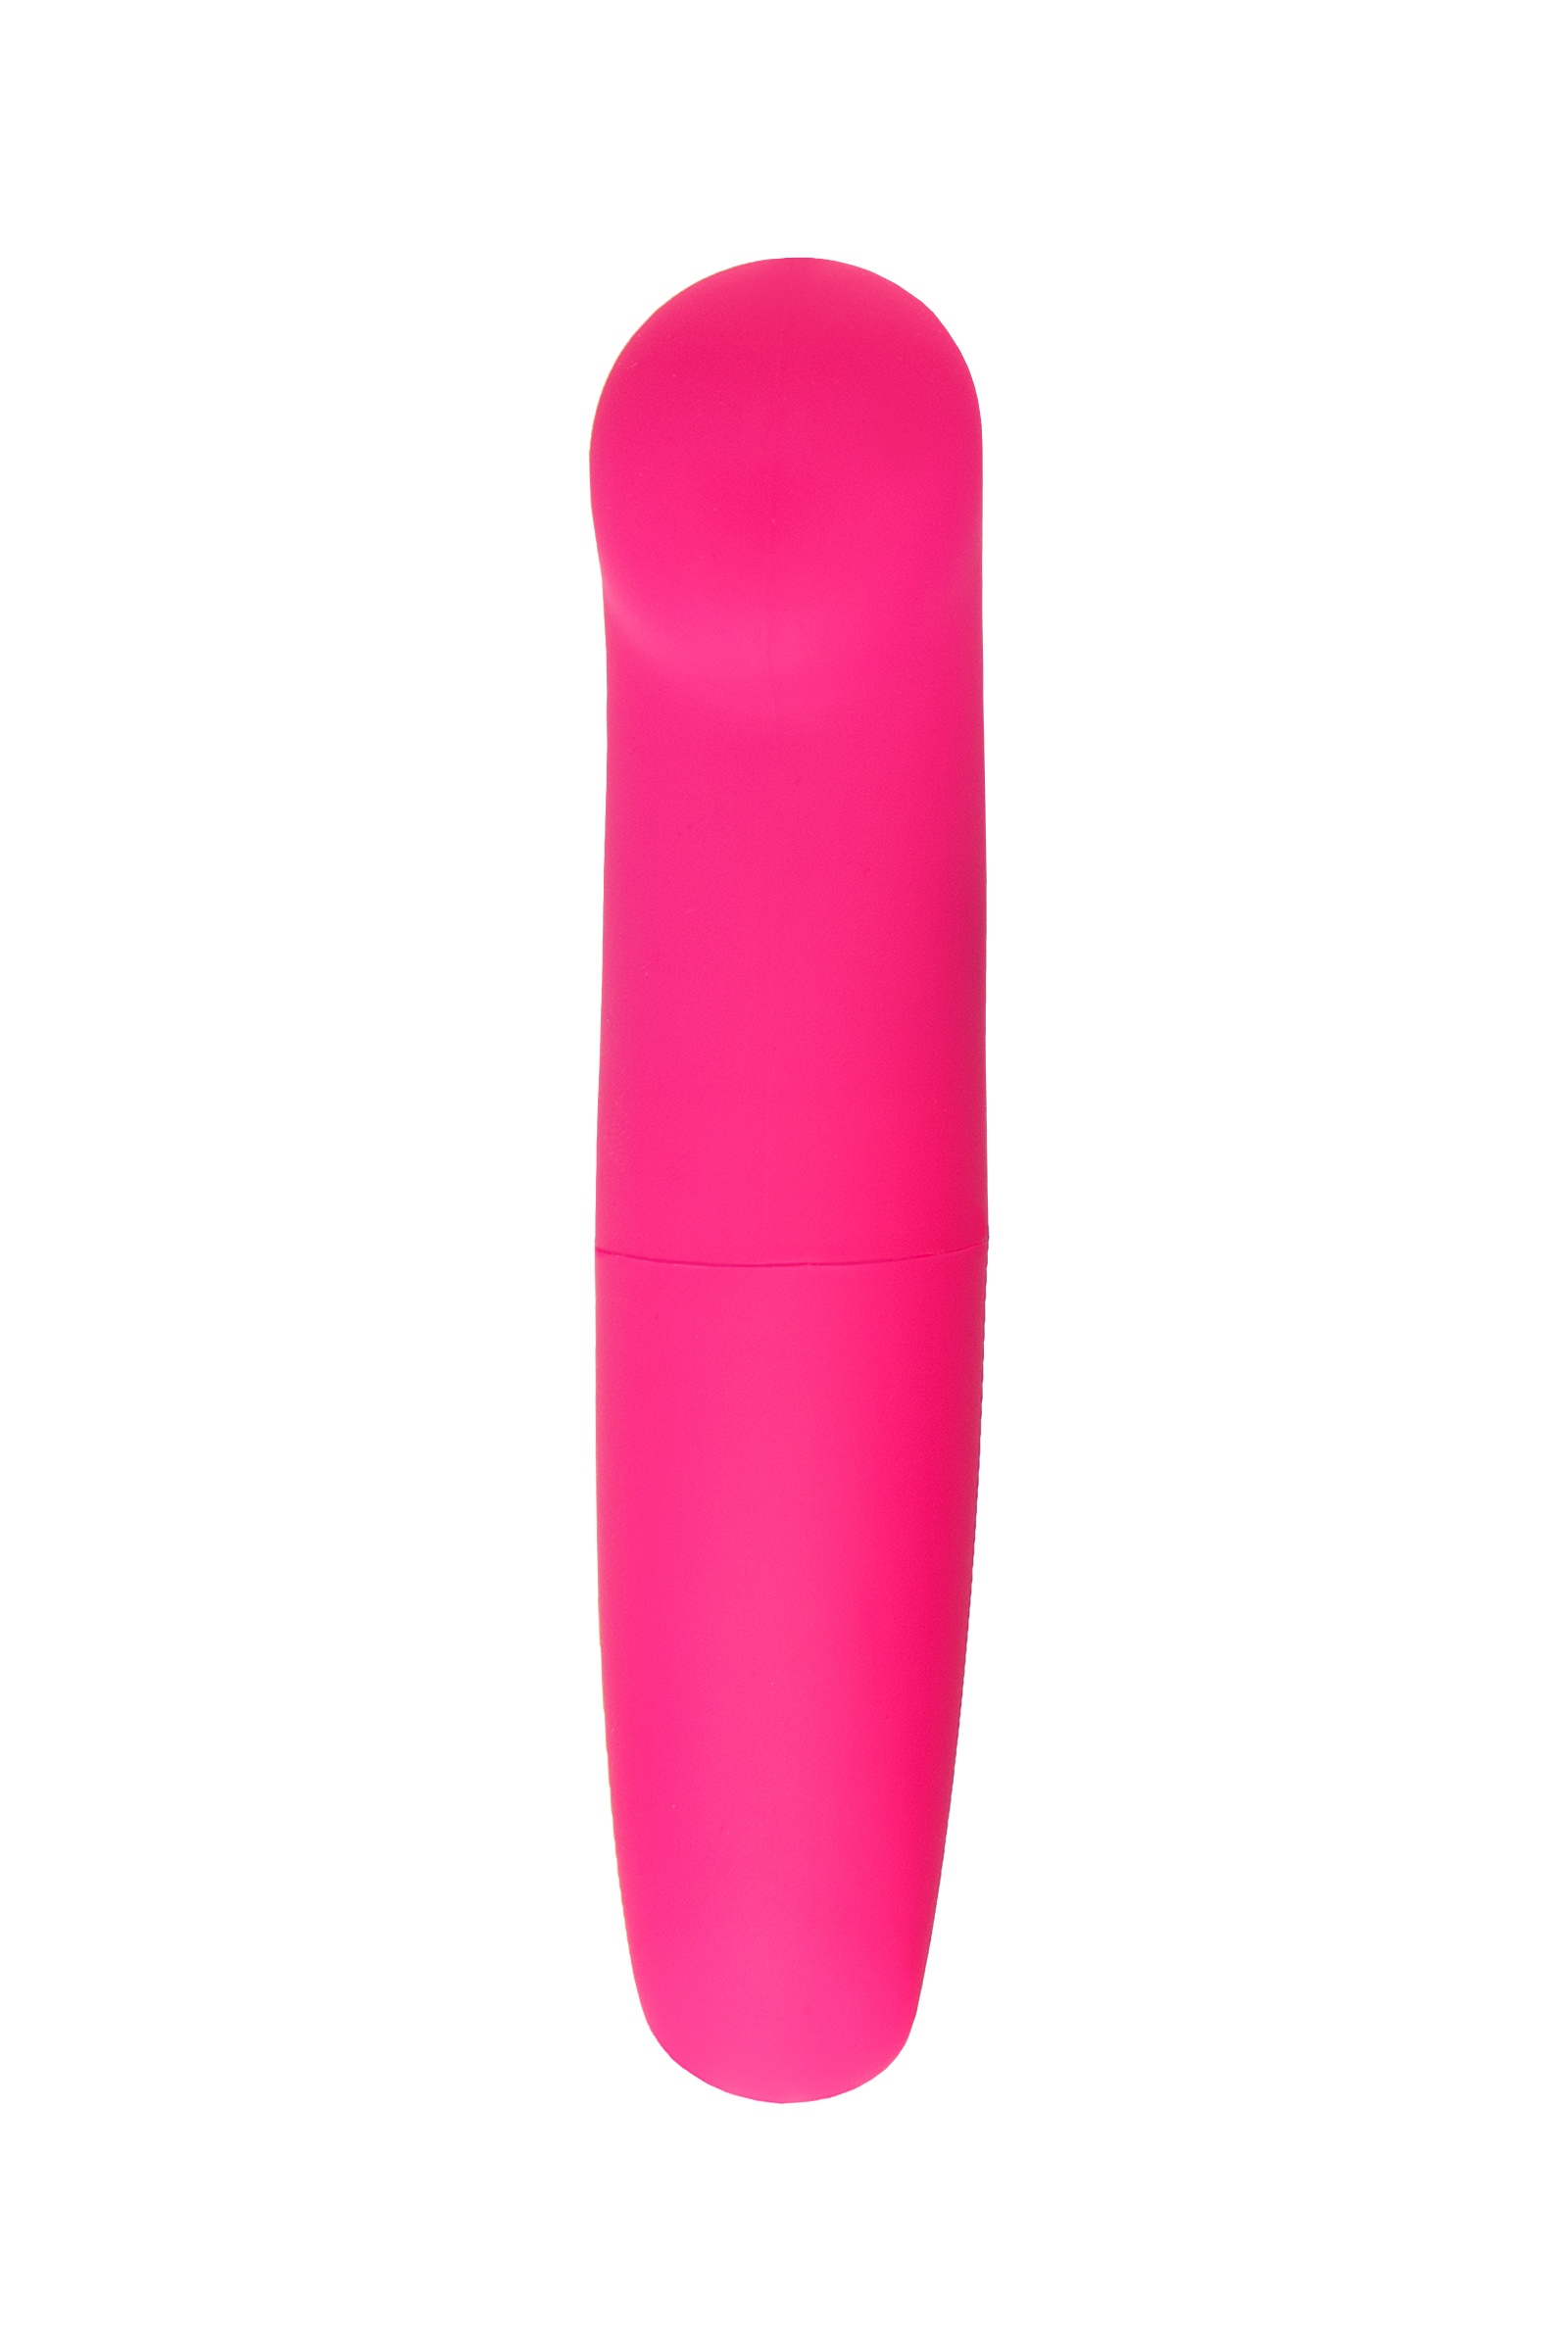 Нереалистичный вибратор Eromantica Juice, ABS пластик, розовый, 12 см. Фото N2